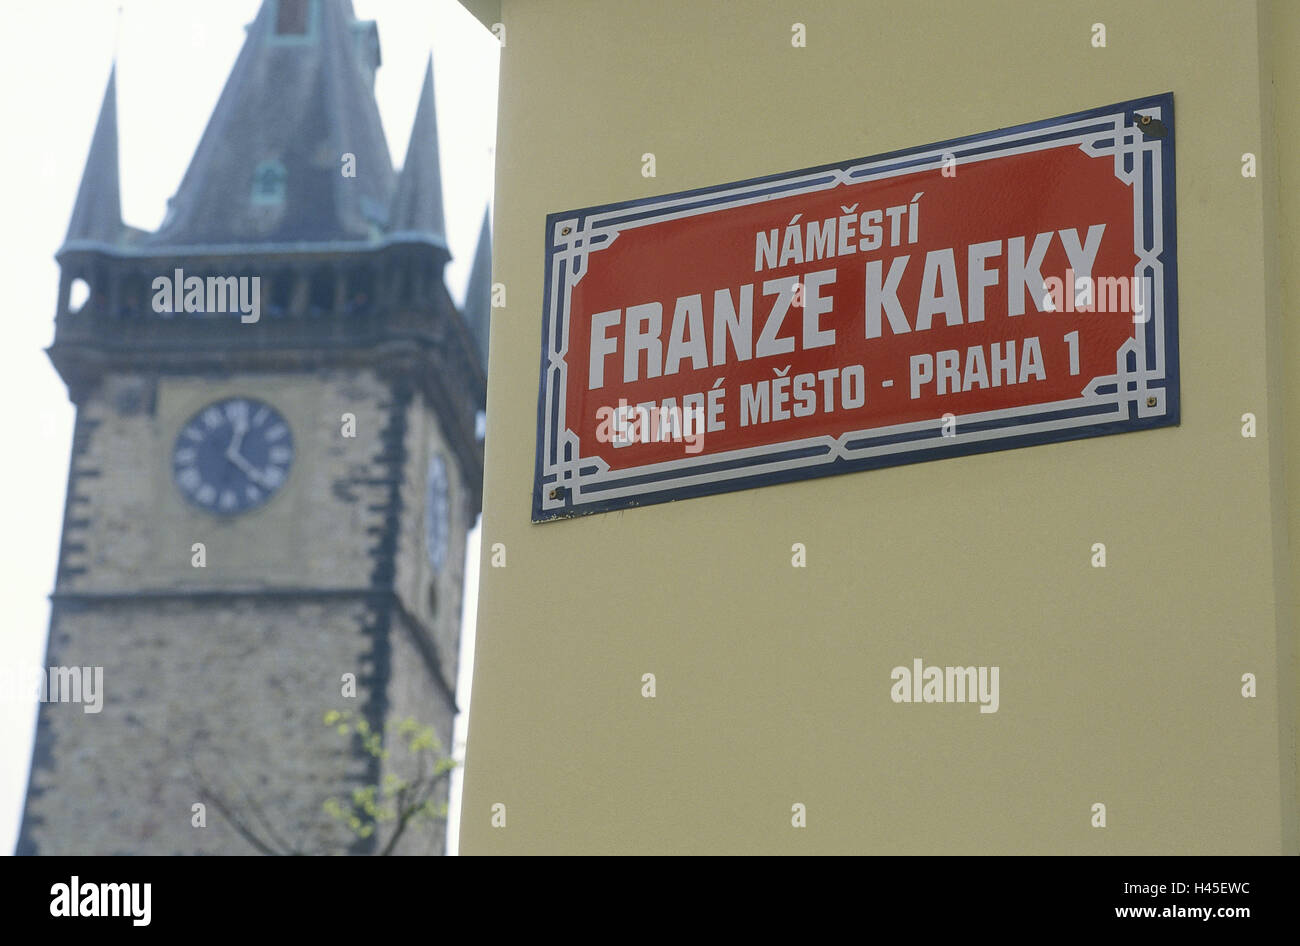 Repubblica Ceca, Praga, cartello stradale, Franz Kafka Platz, dettaglio, segno, angolo, al di fuori del muro, giallo, rosso, tower Foto Stock